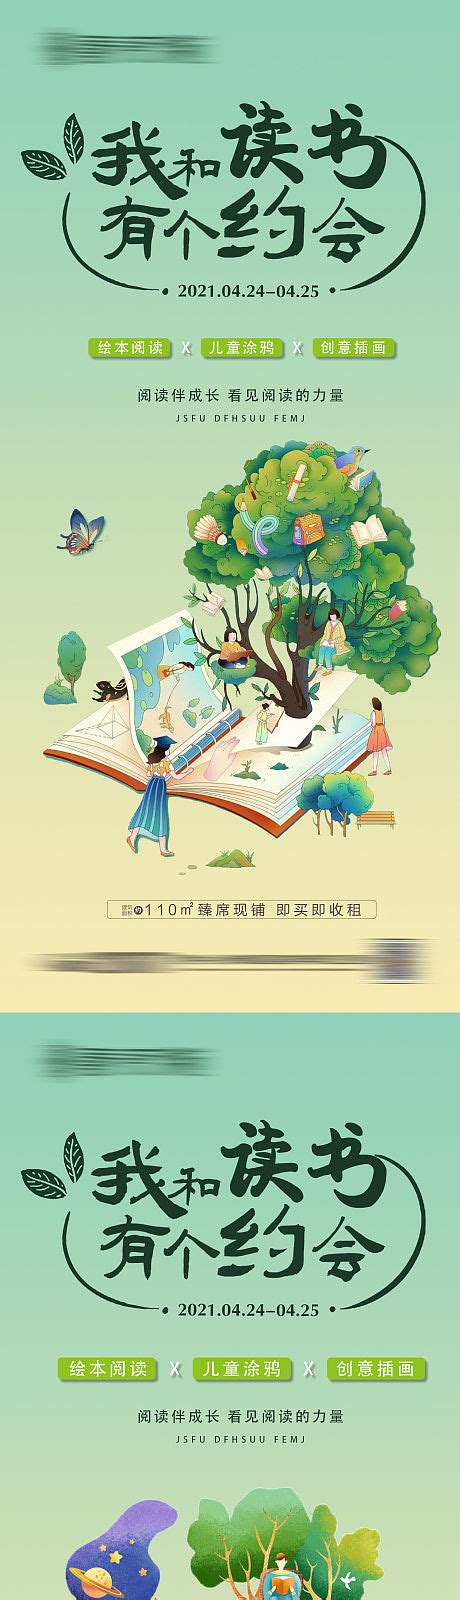 读书活动系列AI广告设计素材海报模板免费下载-享设计